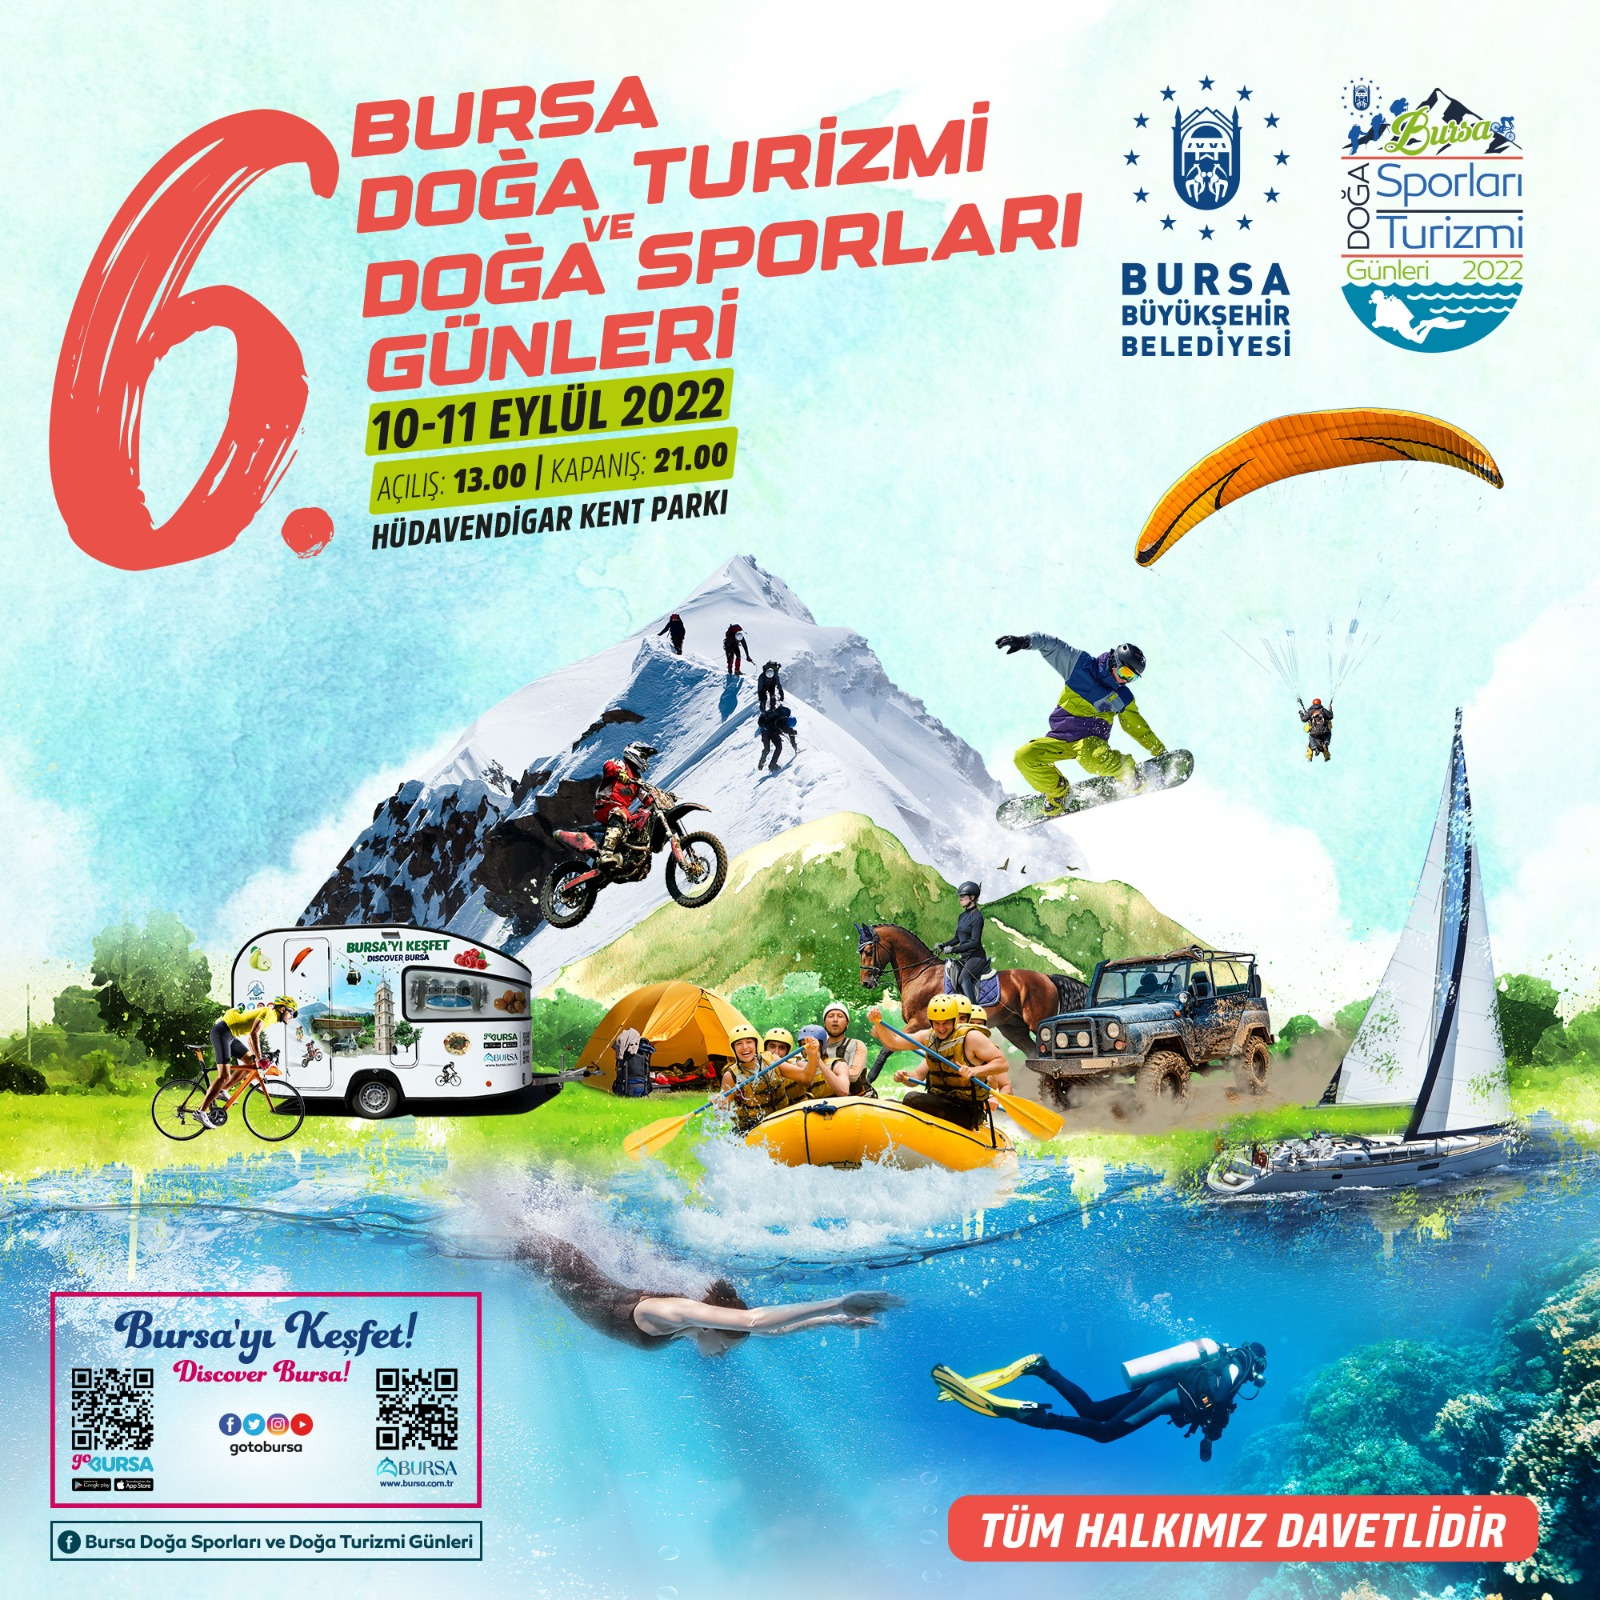 Bursa Doğa Turizmi ve Doğa Sporları Günleri